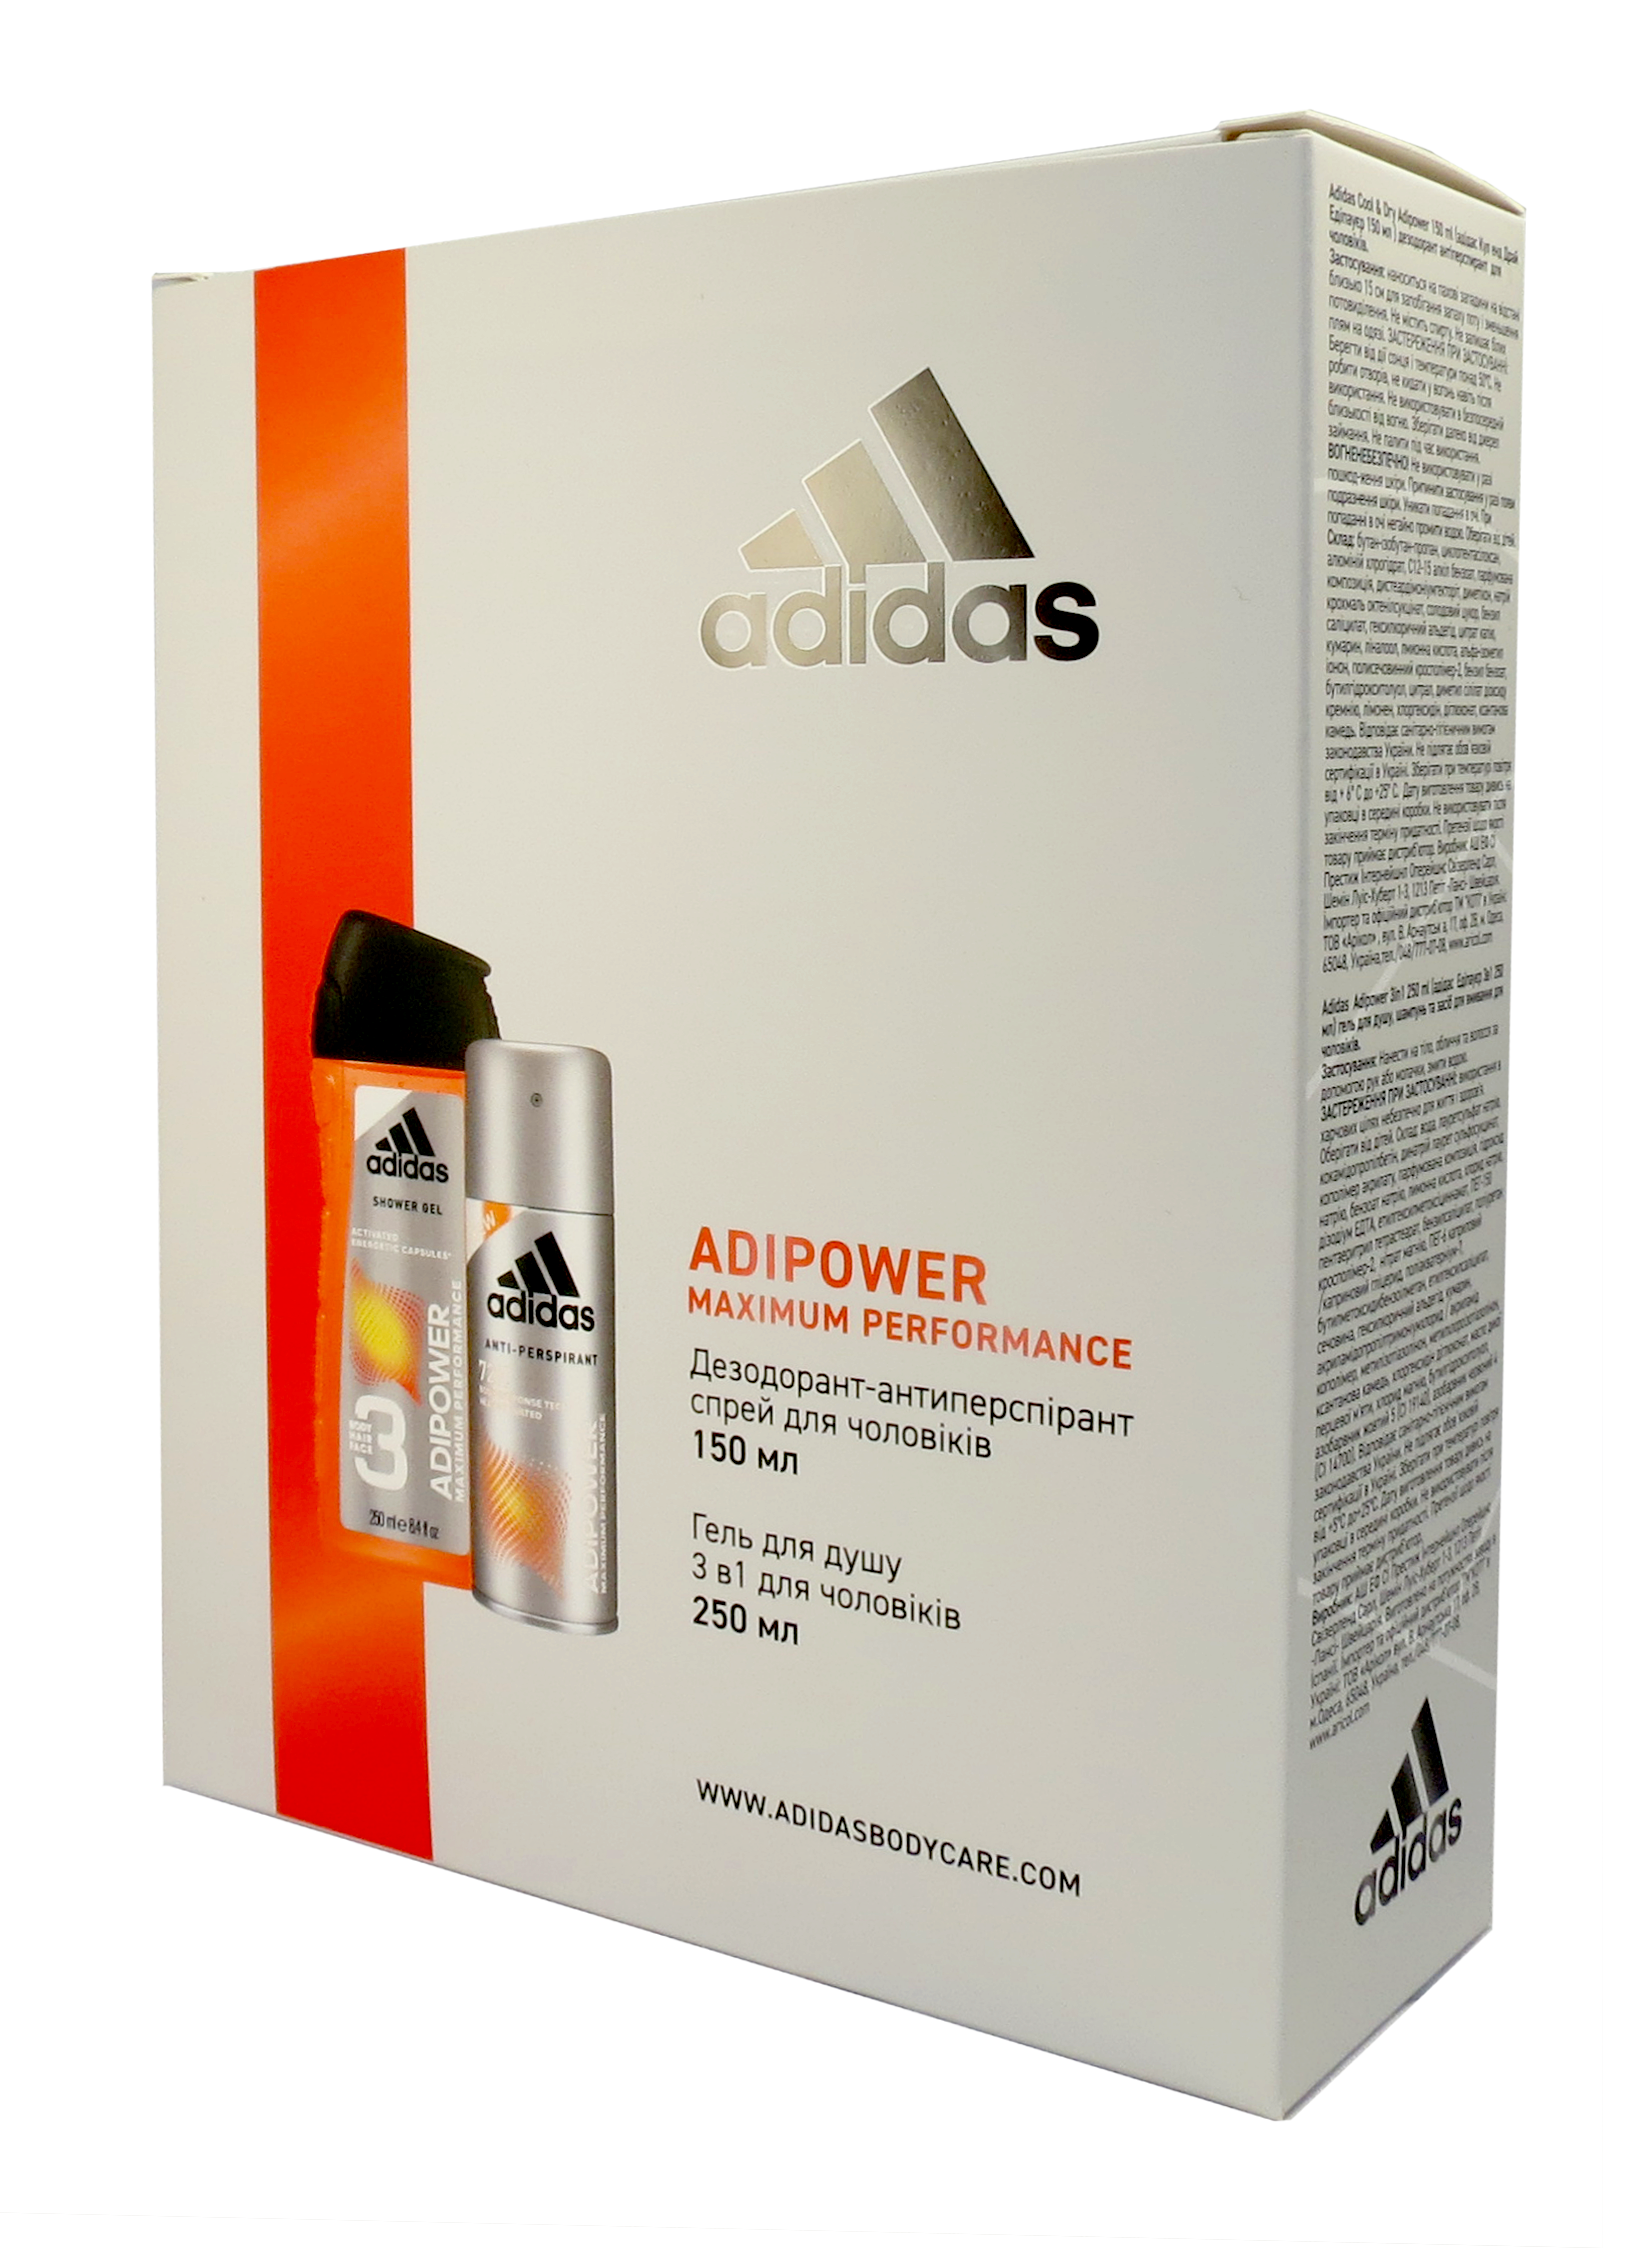 Набор для мужчин Adidas 2020 Дезодорант-антиперспирант Adipower, 150 мл + Гель для душа 3in1 Body hair and face 250 мл - фото 1